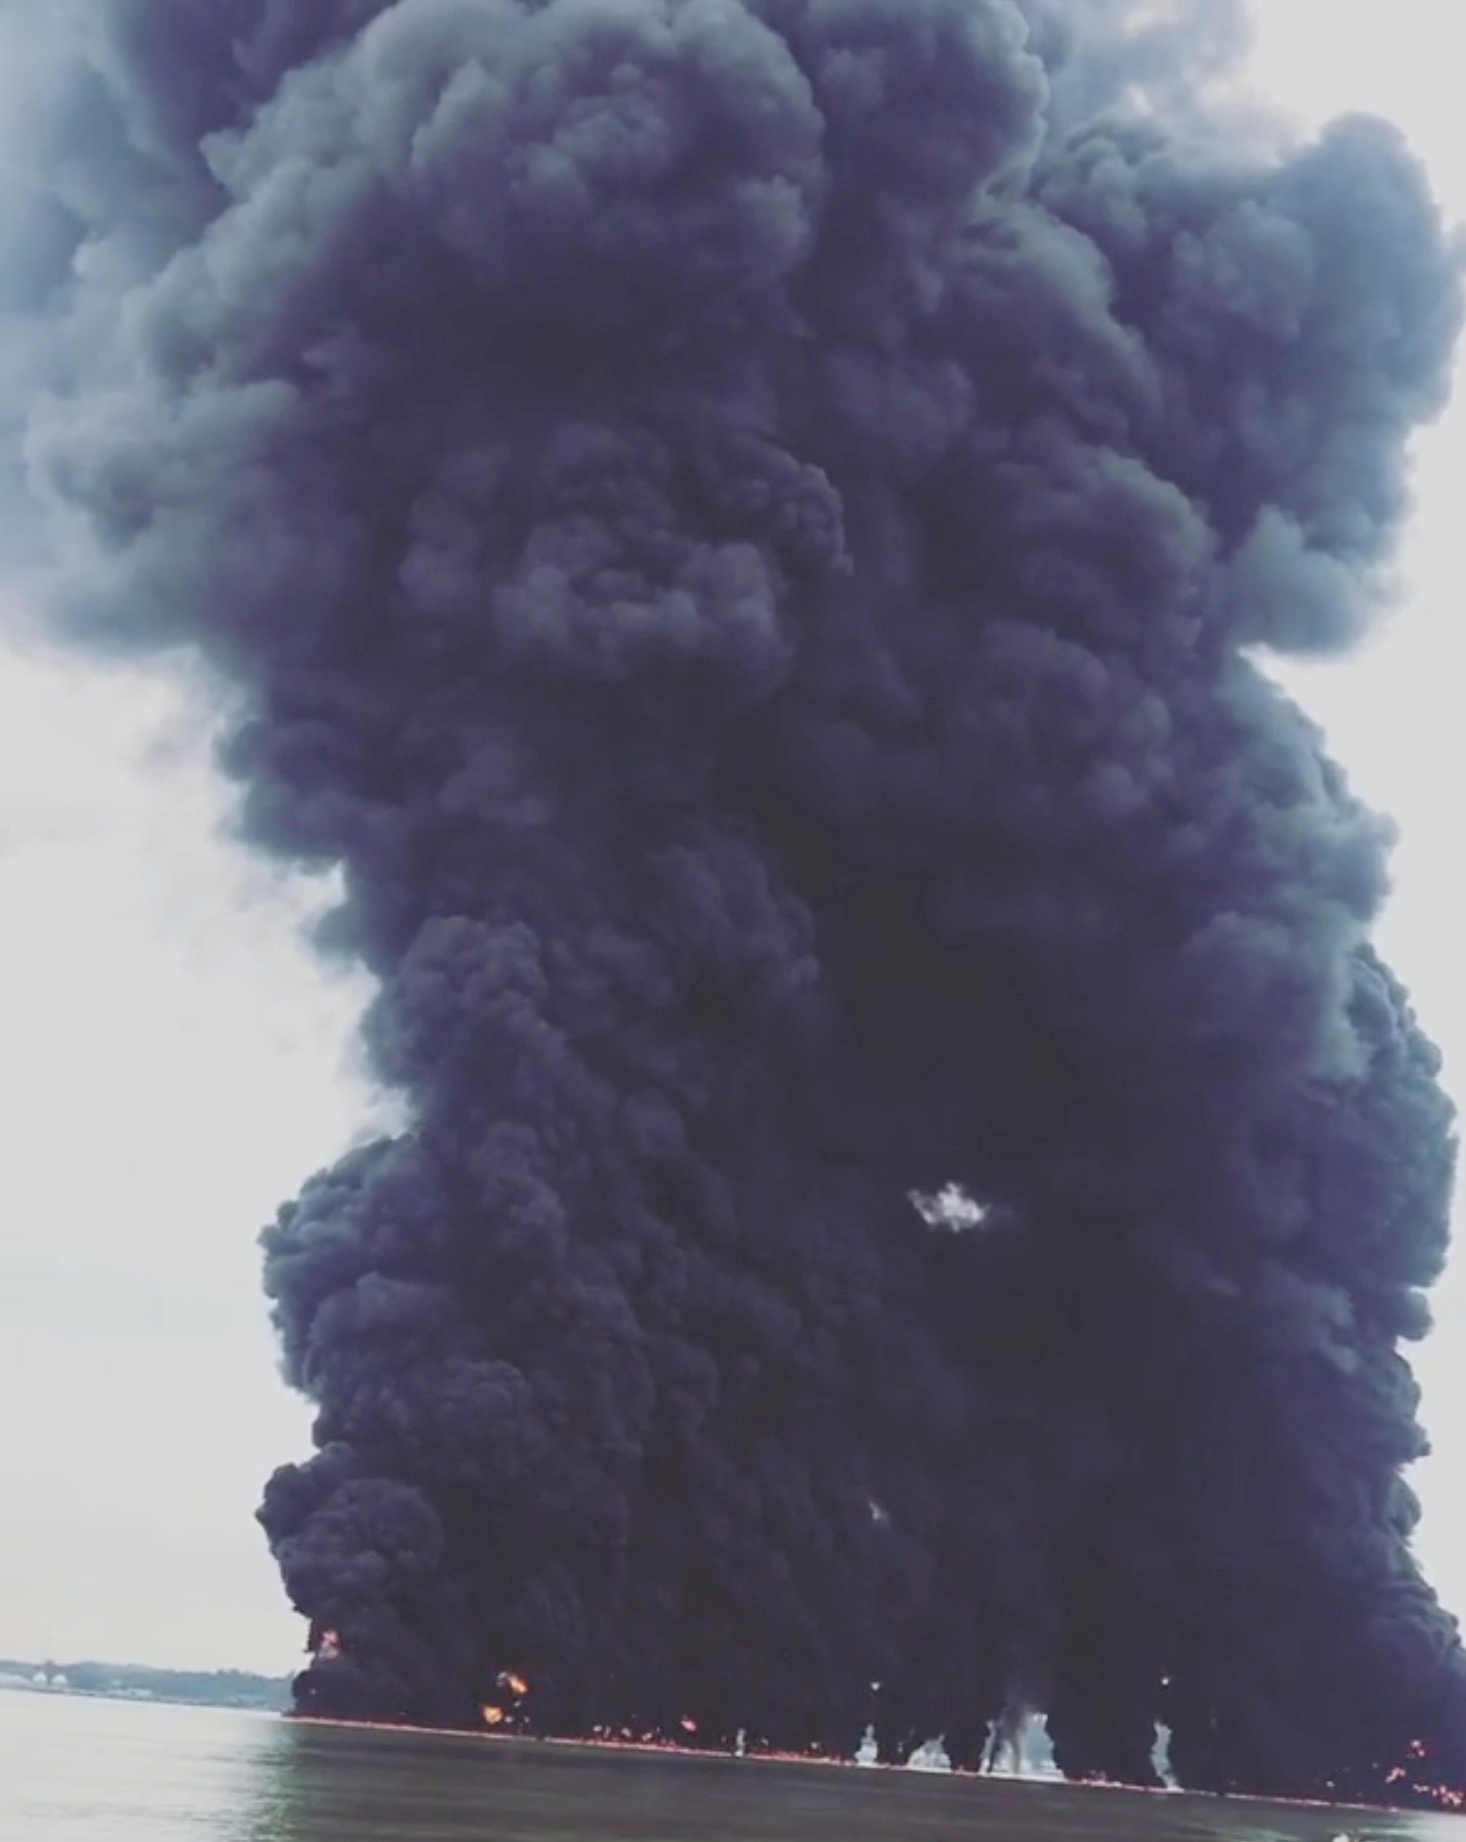 انبعاث الدخان جراء حريق فى سفينة